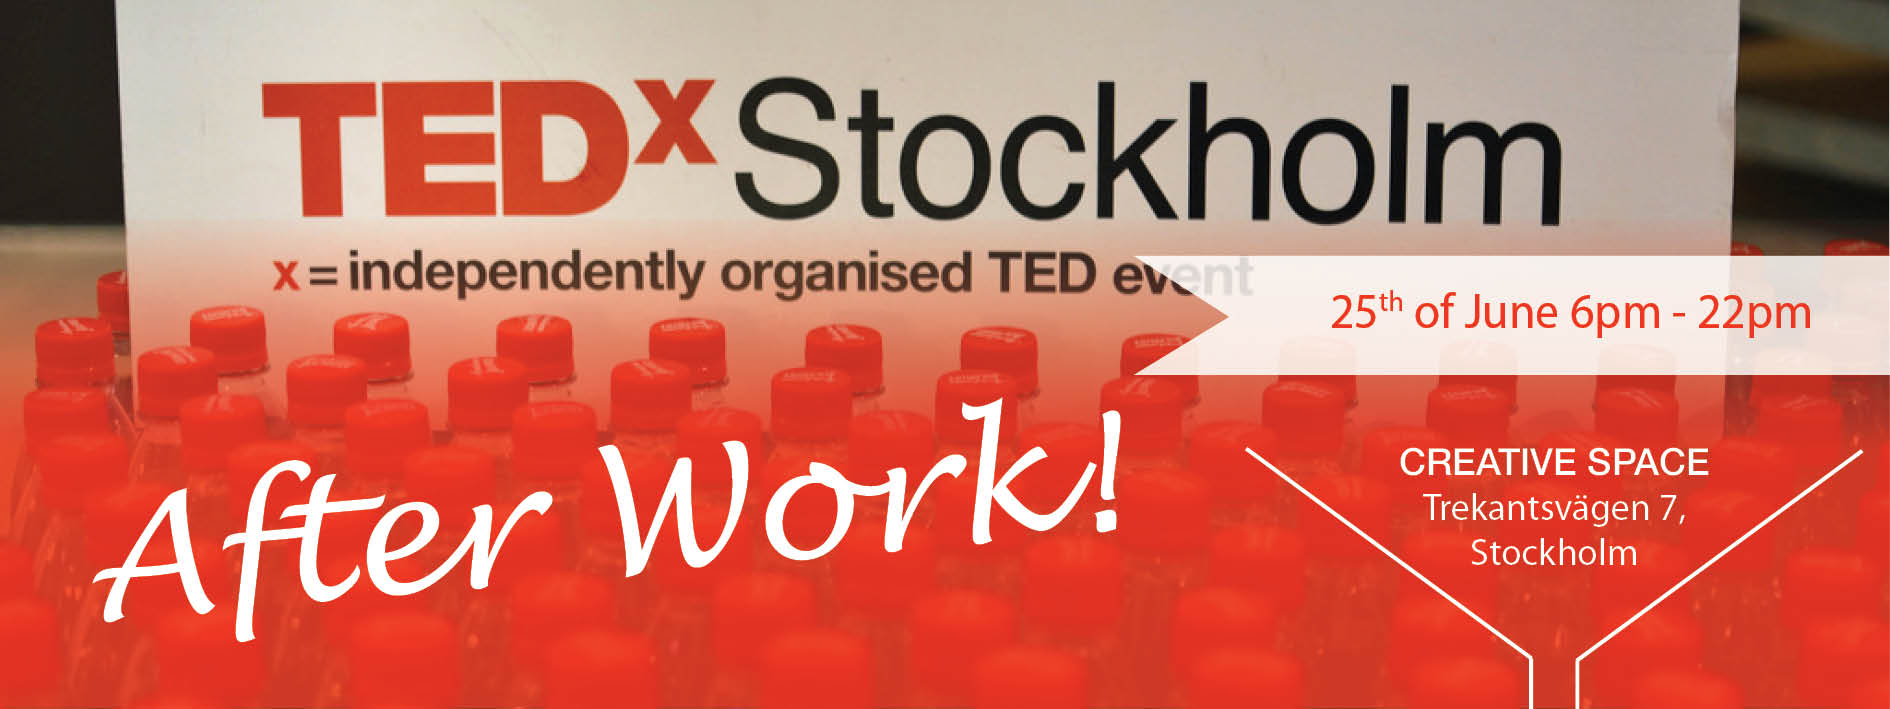 TEDXSTOCKHOLM AFTERWORK – 25th of June 2015